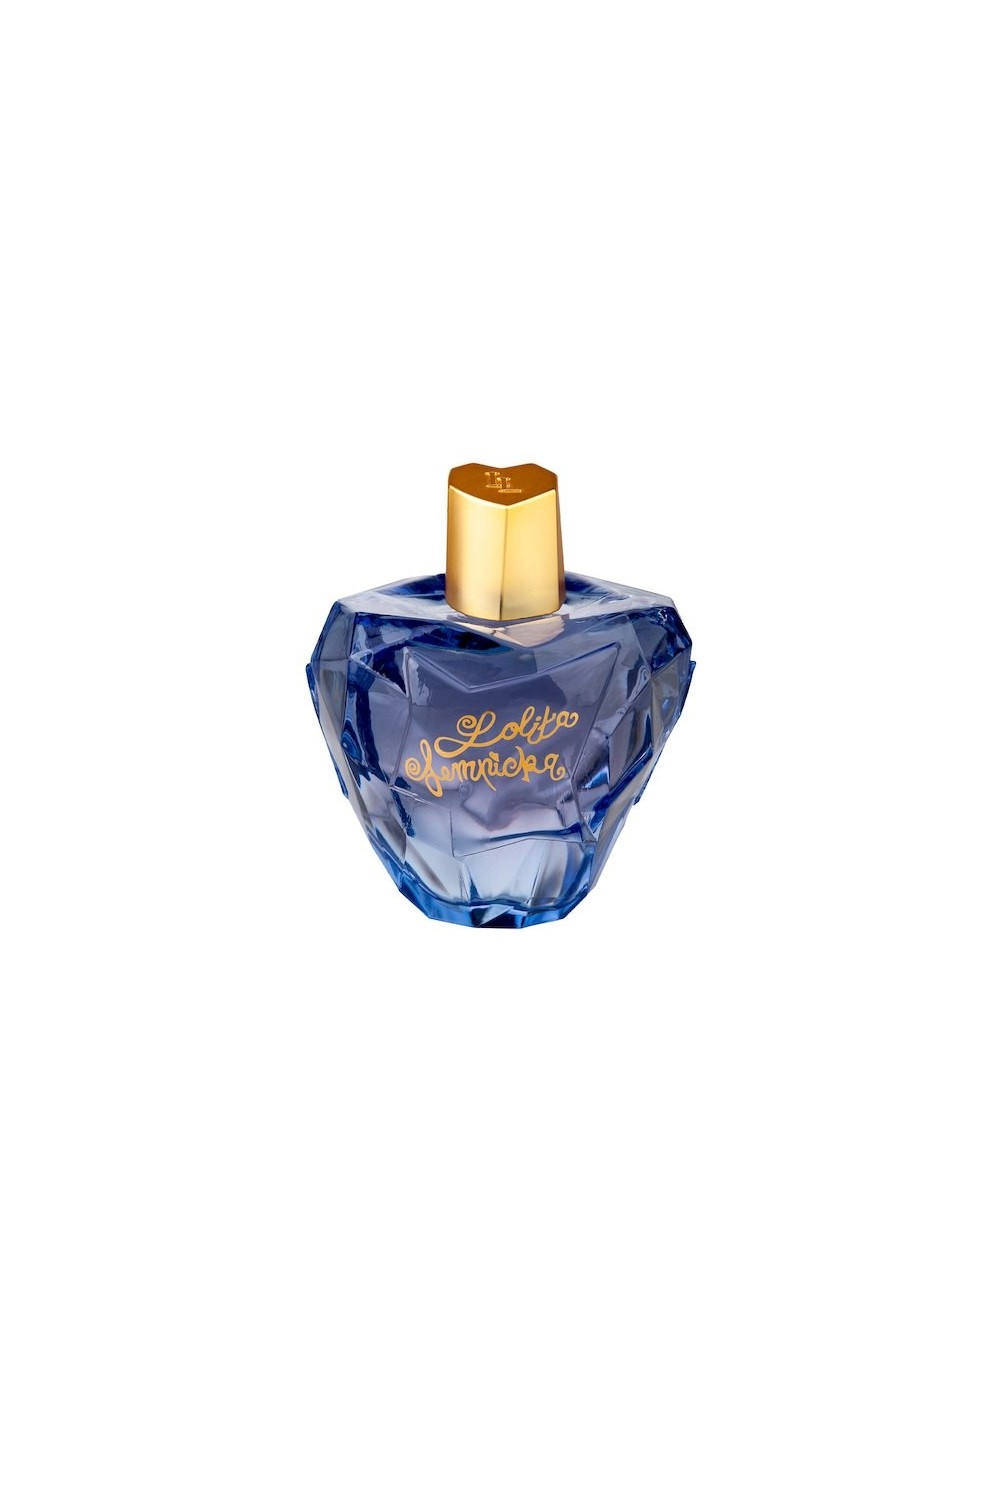 Lolita Lempicka Mon Premier Eau De Perfume Spray 50ml